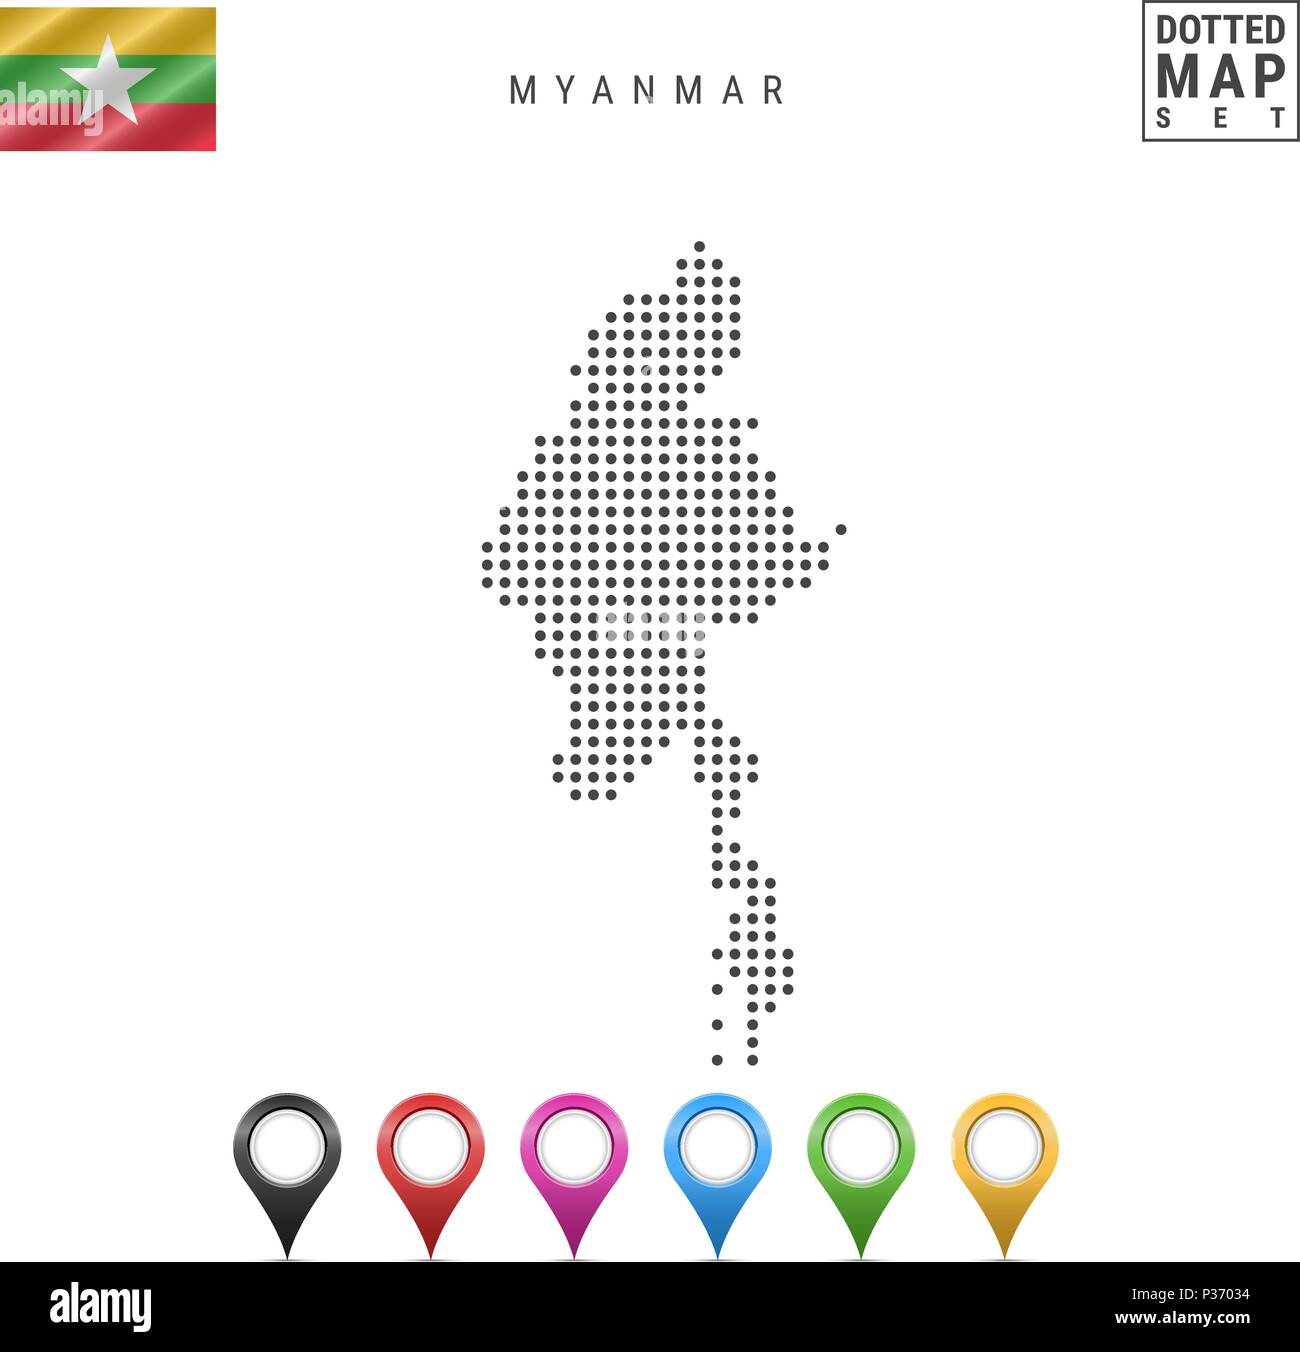 La carte à points vecteur du Myanmar. Silhouette simple du Myanmar. Drapeau national du Myanmar. Ensemble de marqueurs carte multicolore Illustration de Vecteur